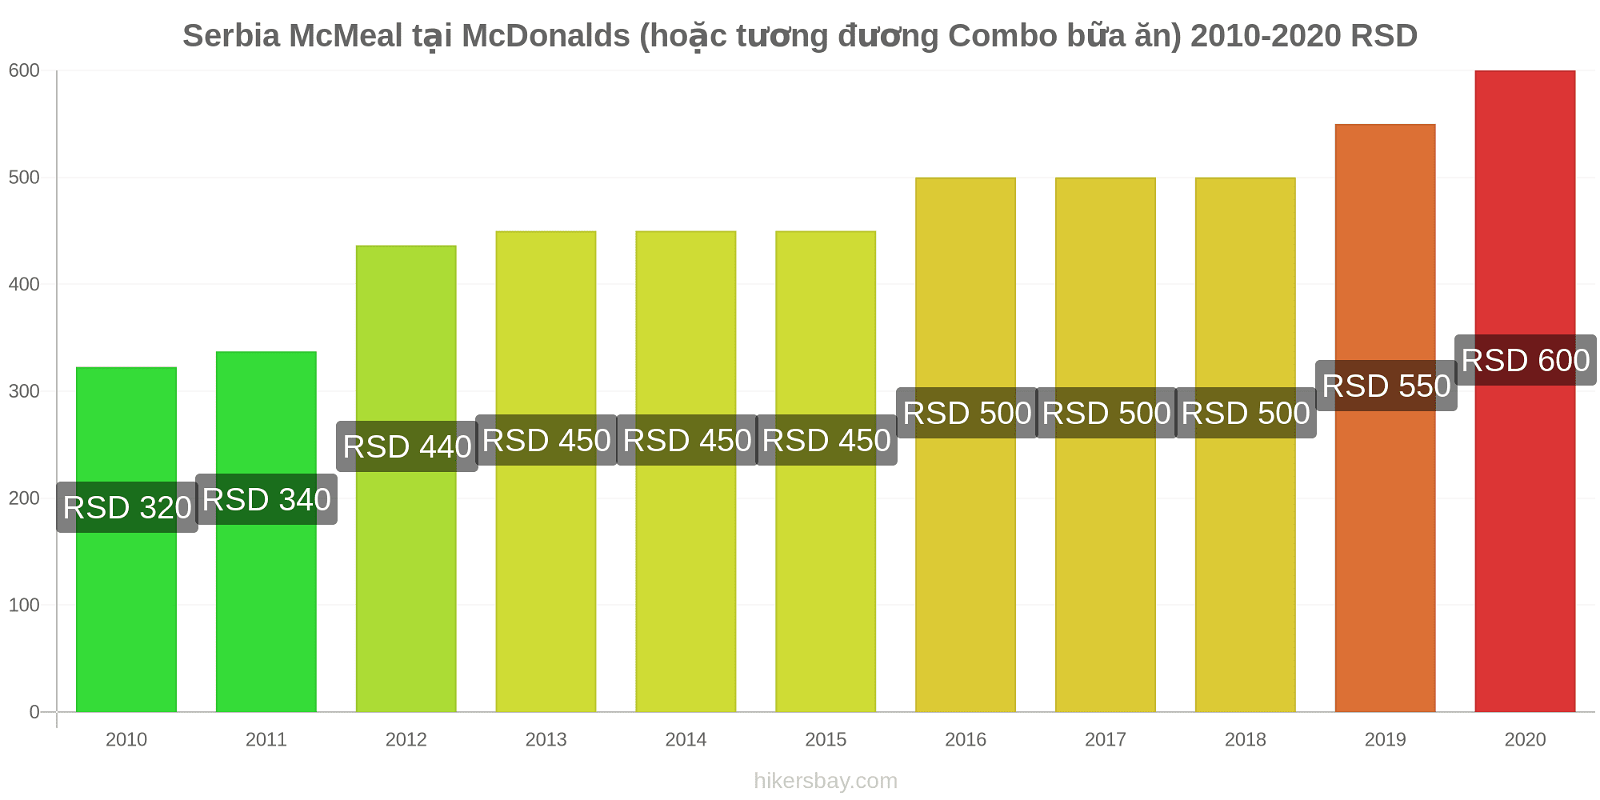 Serbia thay đổi giá McMeal tại McDonalds (hoặc tương đương Combo bữa ăn) hikersbay.com